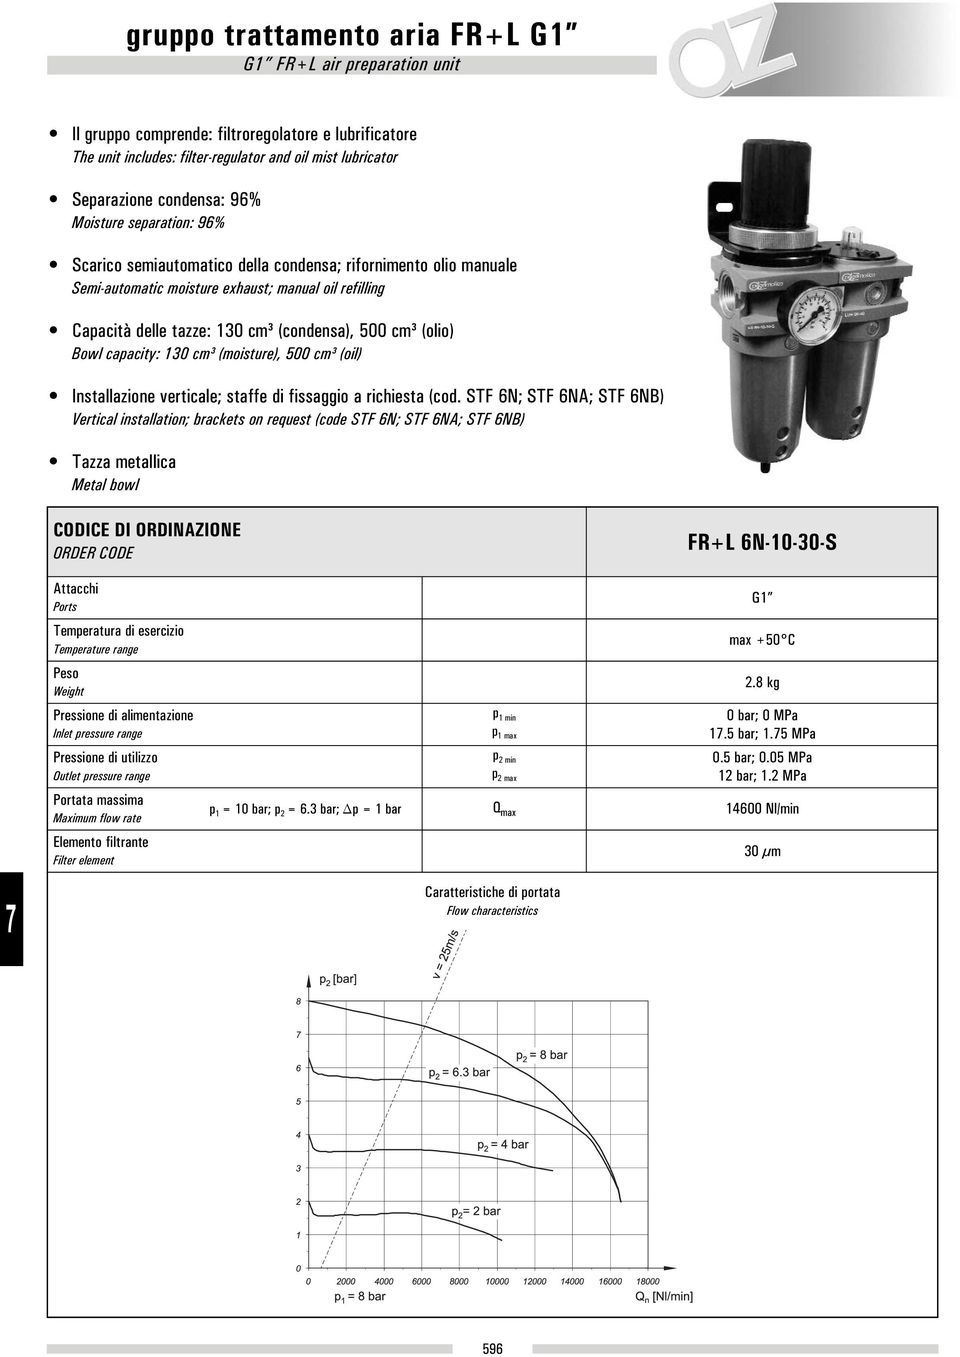 (olio) Bowl capacity: 130 cm³ (moisture), 500 cm³ (oil) Installazione verticale; staffe di fissaggio a richiesta (cod.